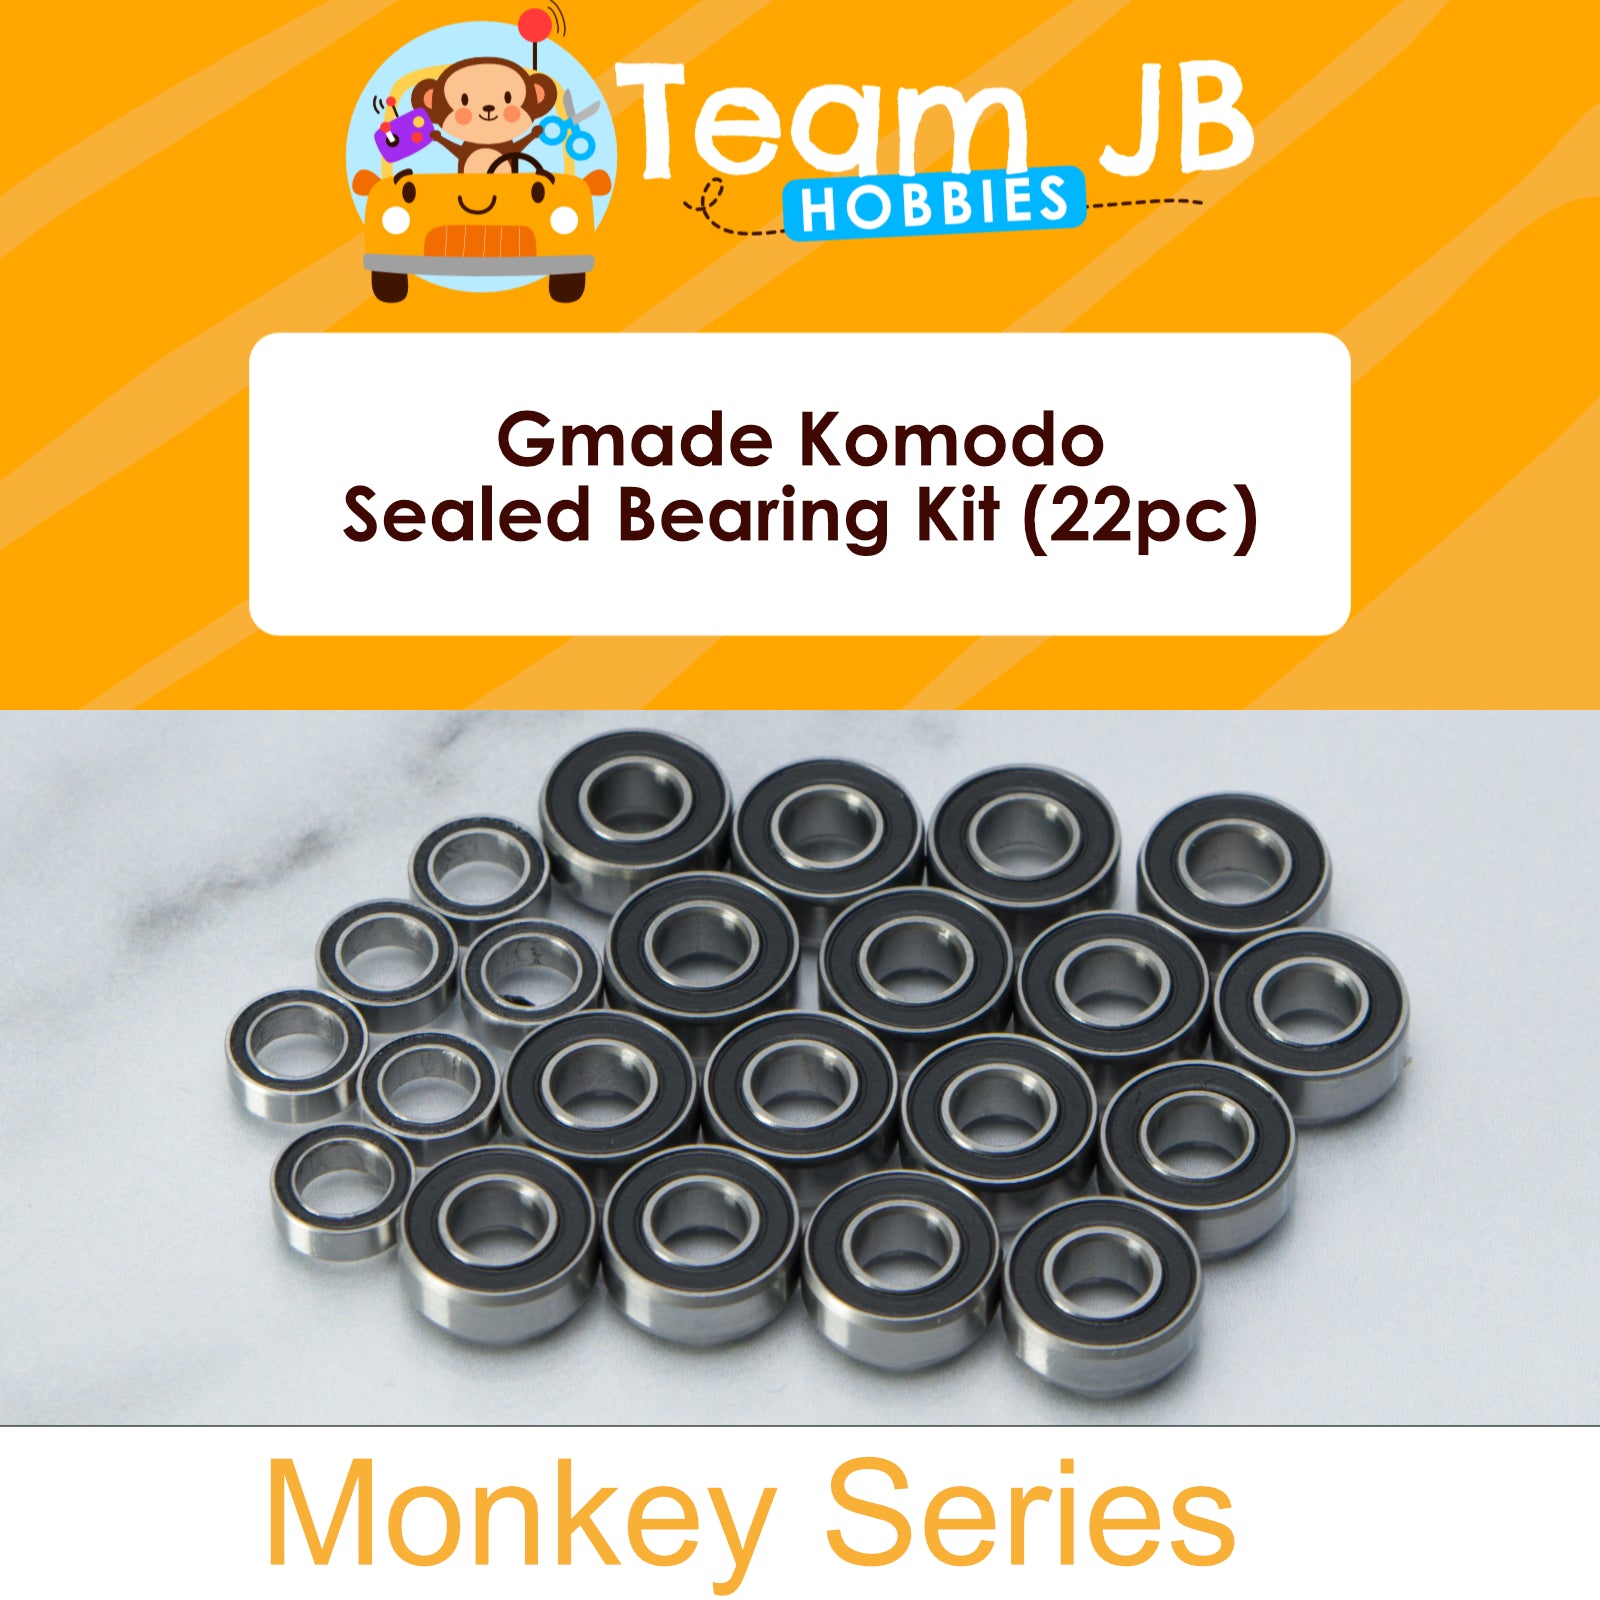 Gmade Komodo - Sealed Bearing Kit